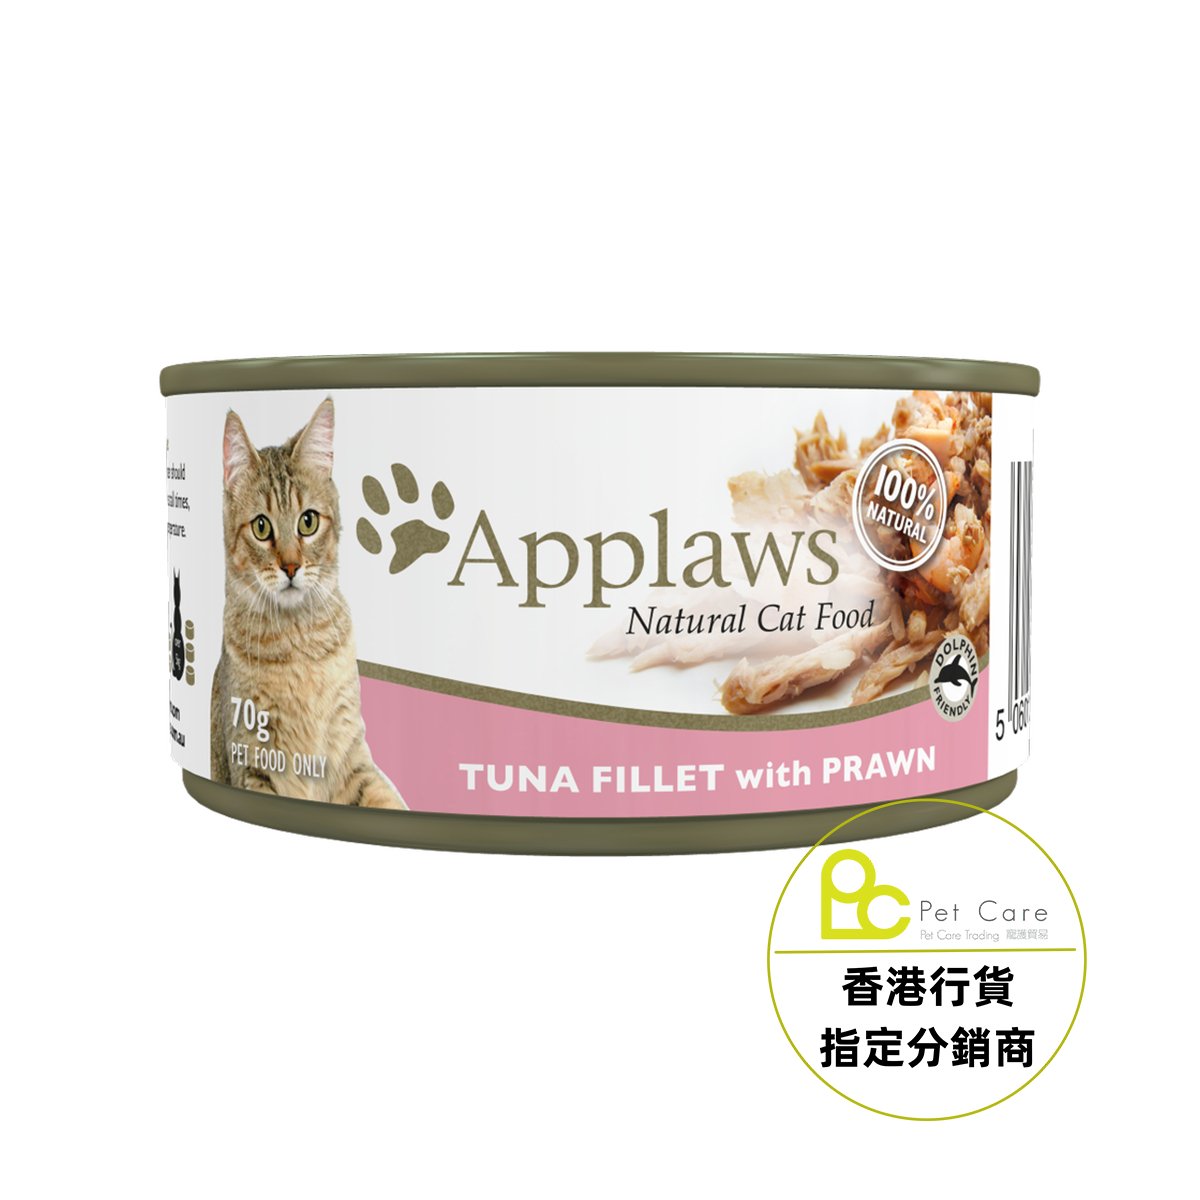 Applaws 全天然 貓罐頭 - 吞拿魚+蝦 70g (細)